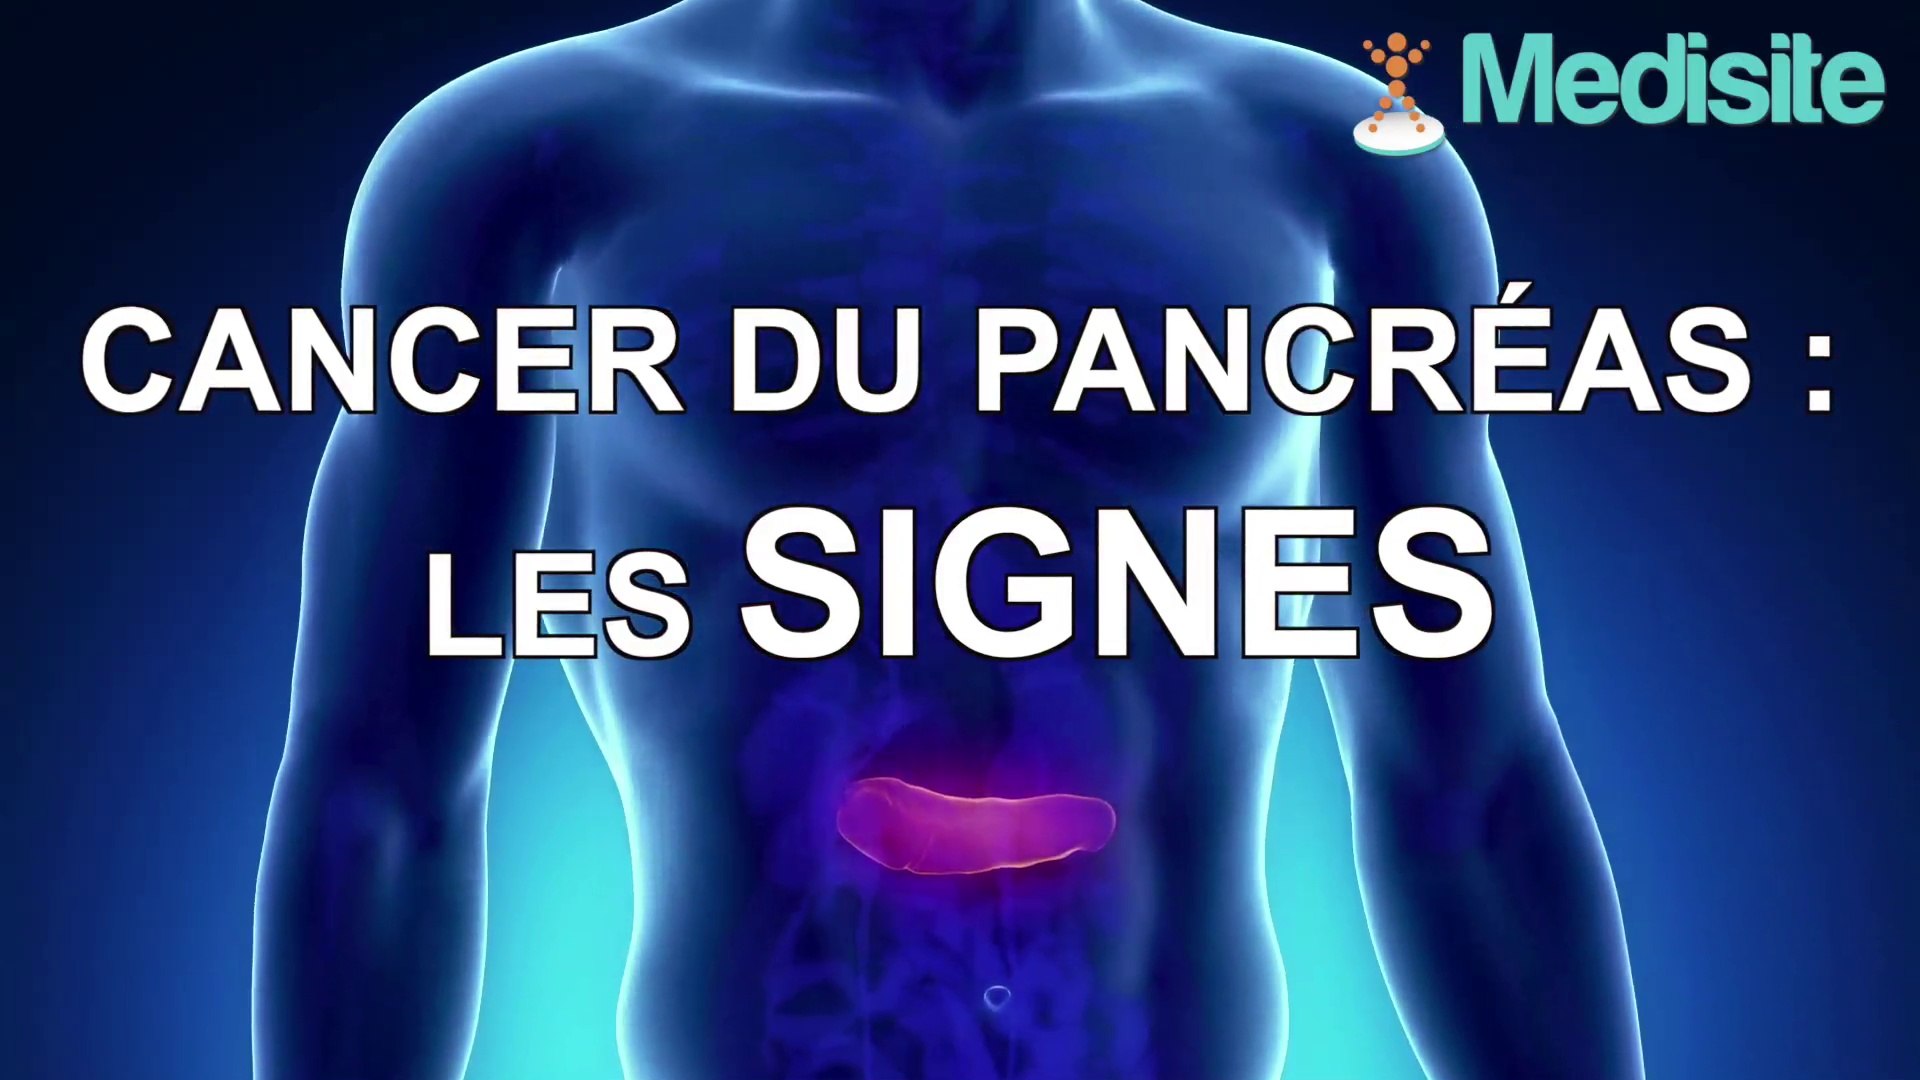 Cancer du pancréas : les signes - Vidéo Dailymotion